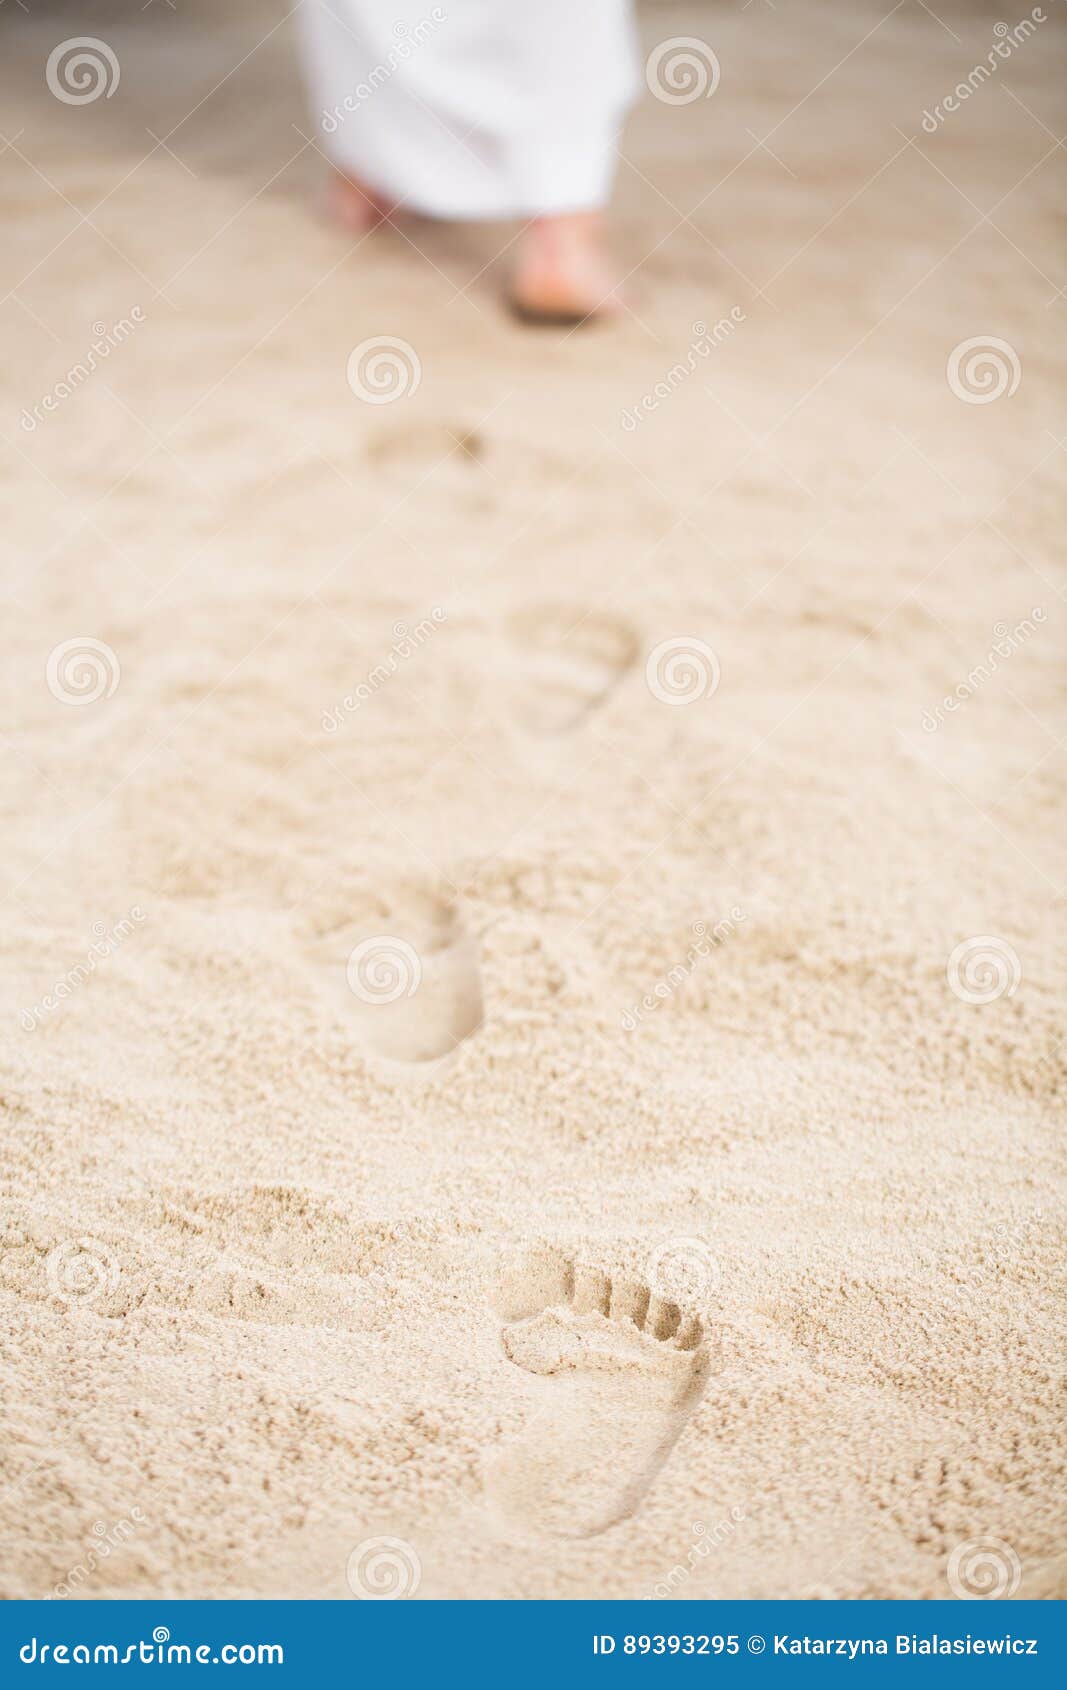 jesus walking leaving footprints